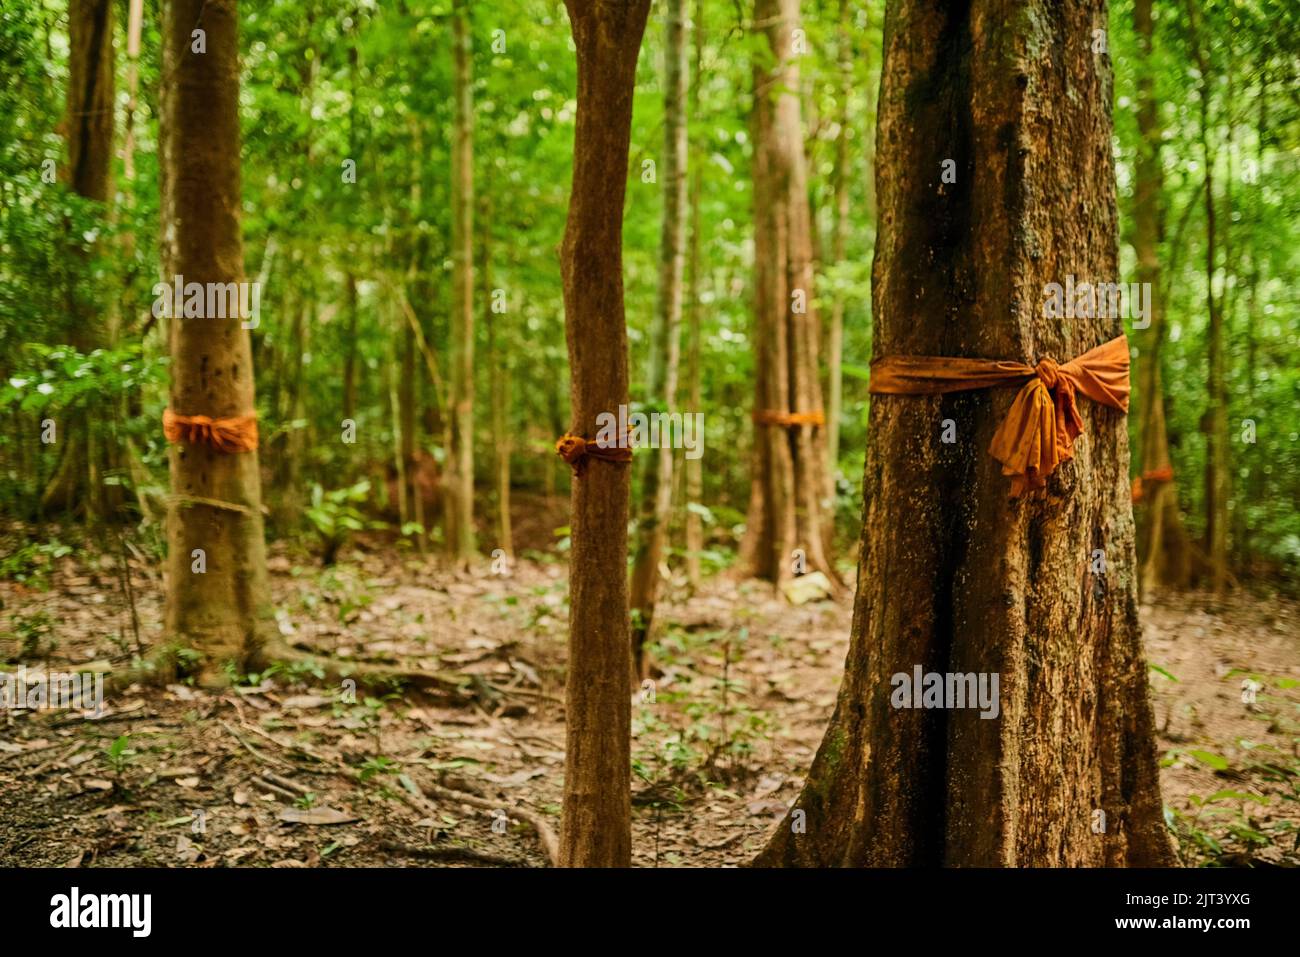 Hier wohnen Geister. Schoss einen Wald aus Bäumen mit orangefarbenem Stoff, der um ihre Stämme gebunden war. Stockfoto